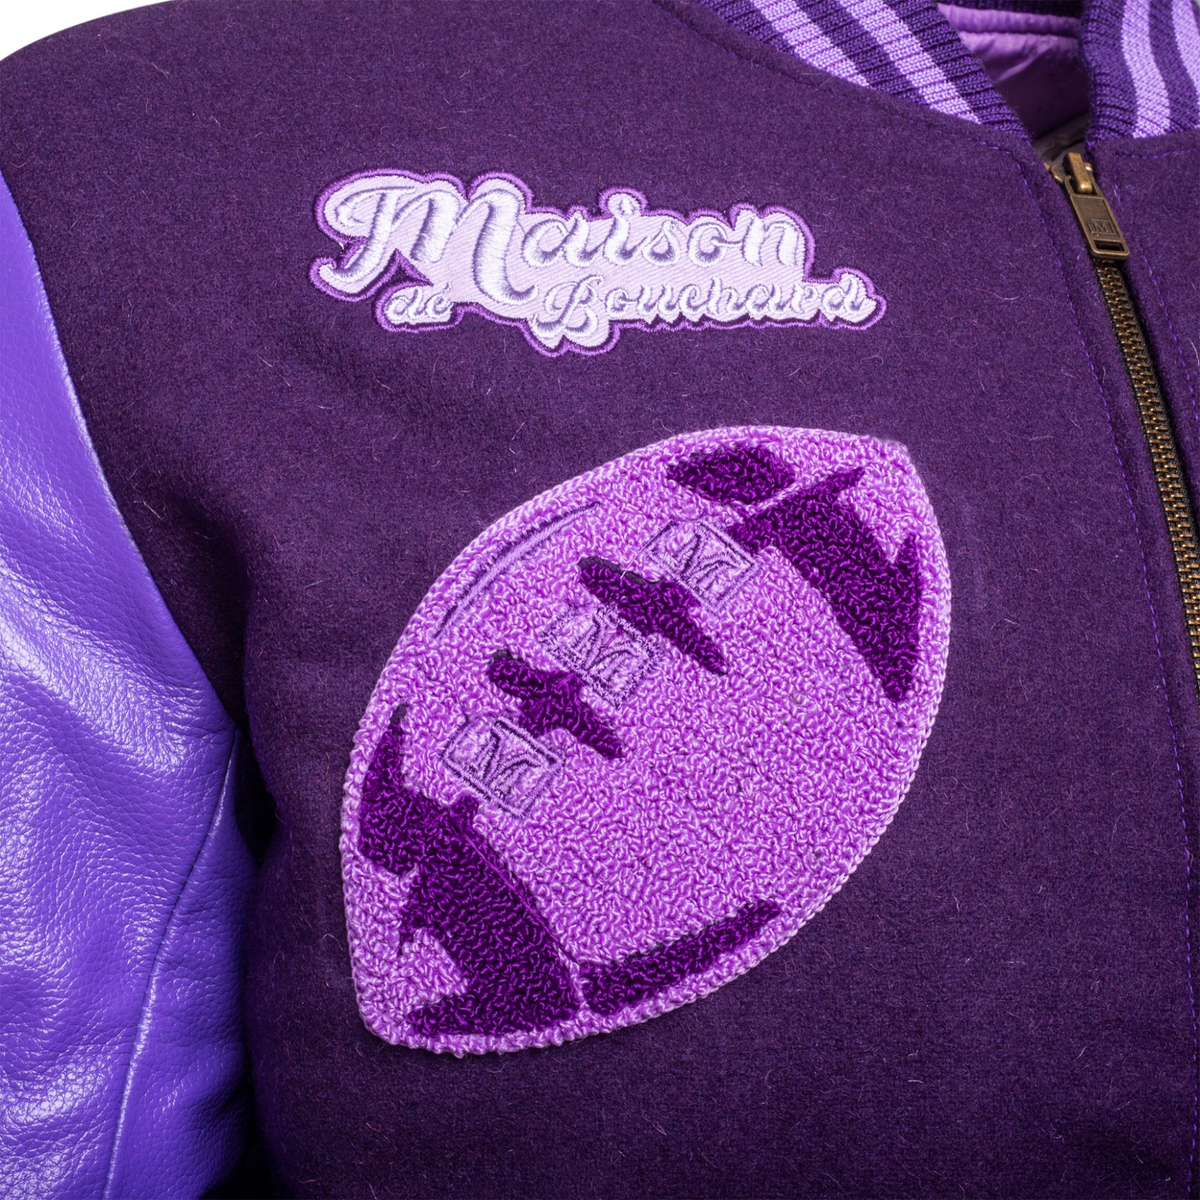 MDB Brand Men's Varsity Letterman Jacket V2 - Monochrome Purple